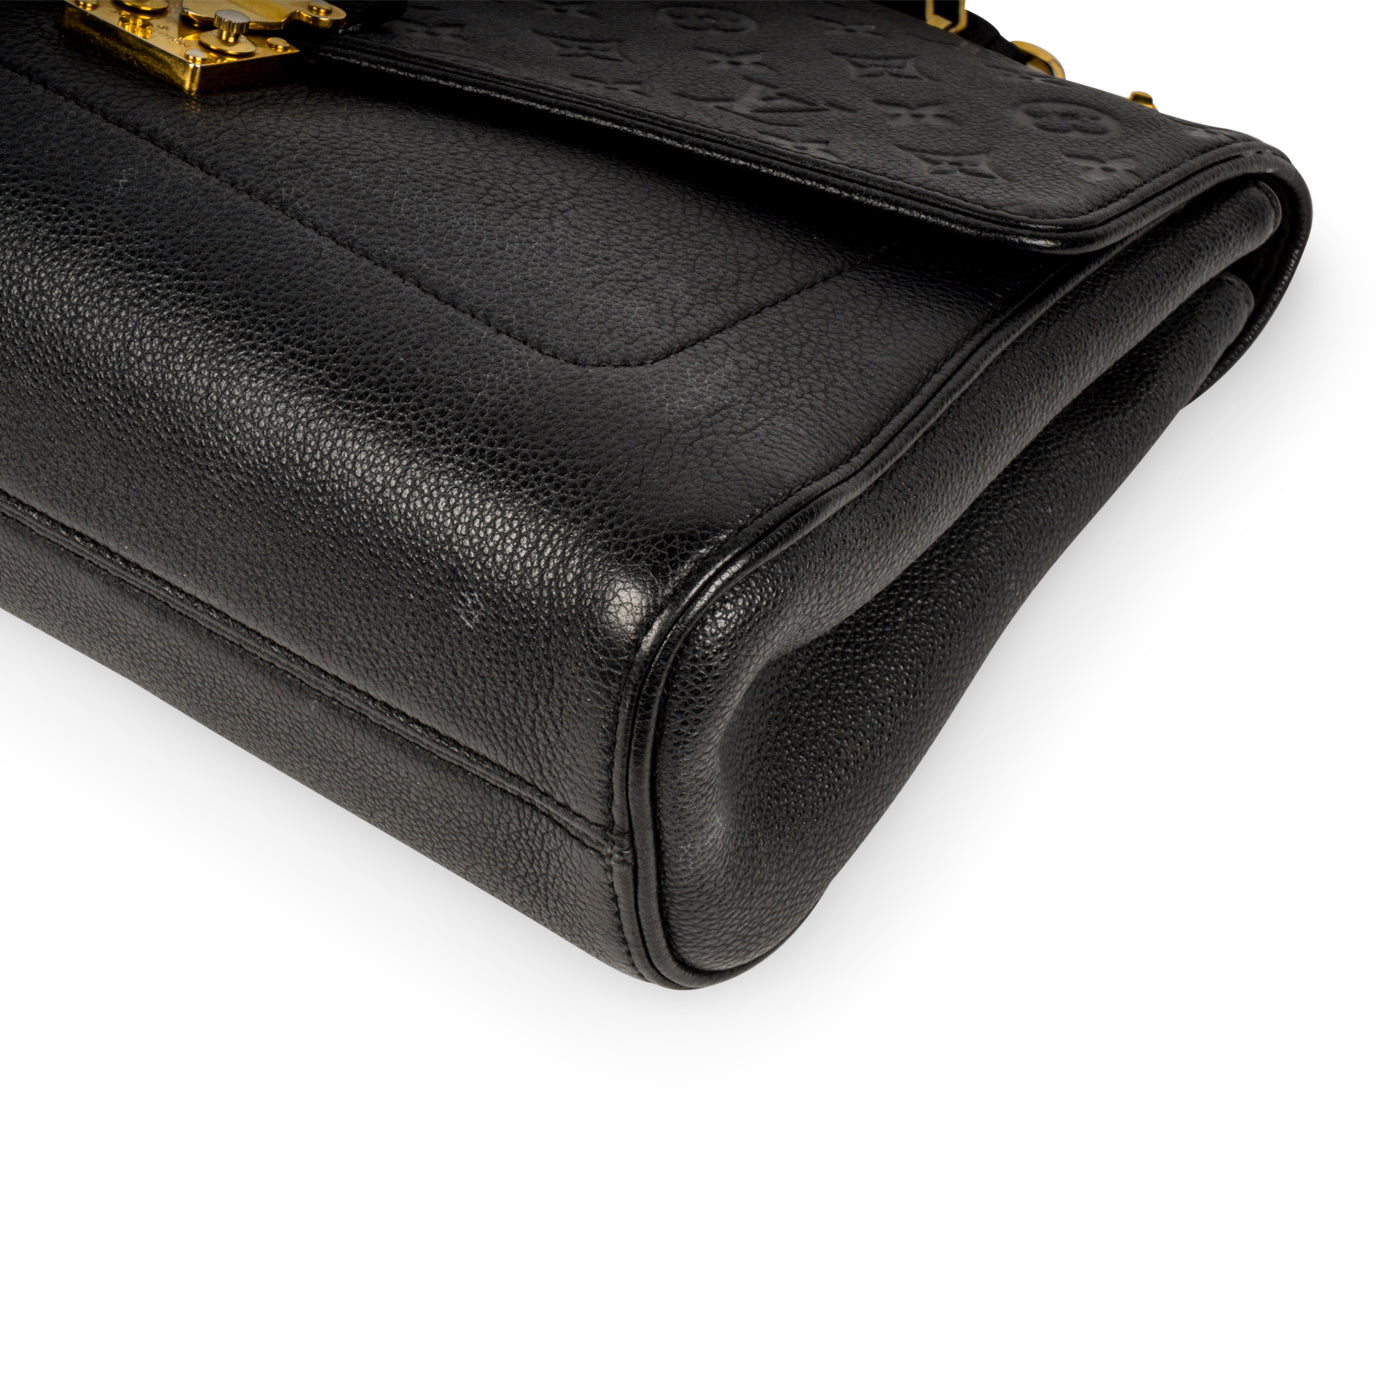 Louis Vuitton Saint Germain Mm Shoulder Bag